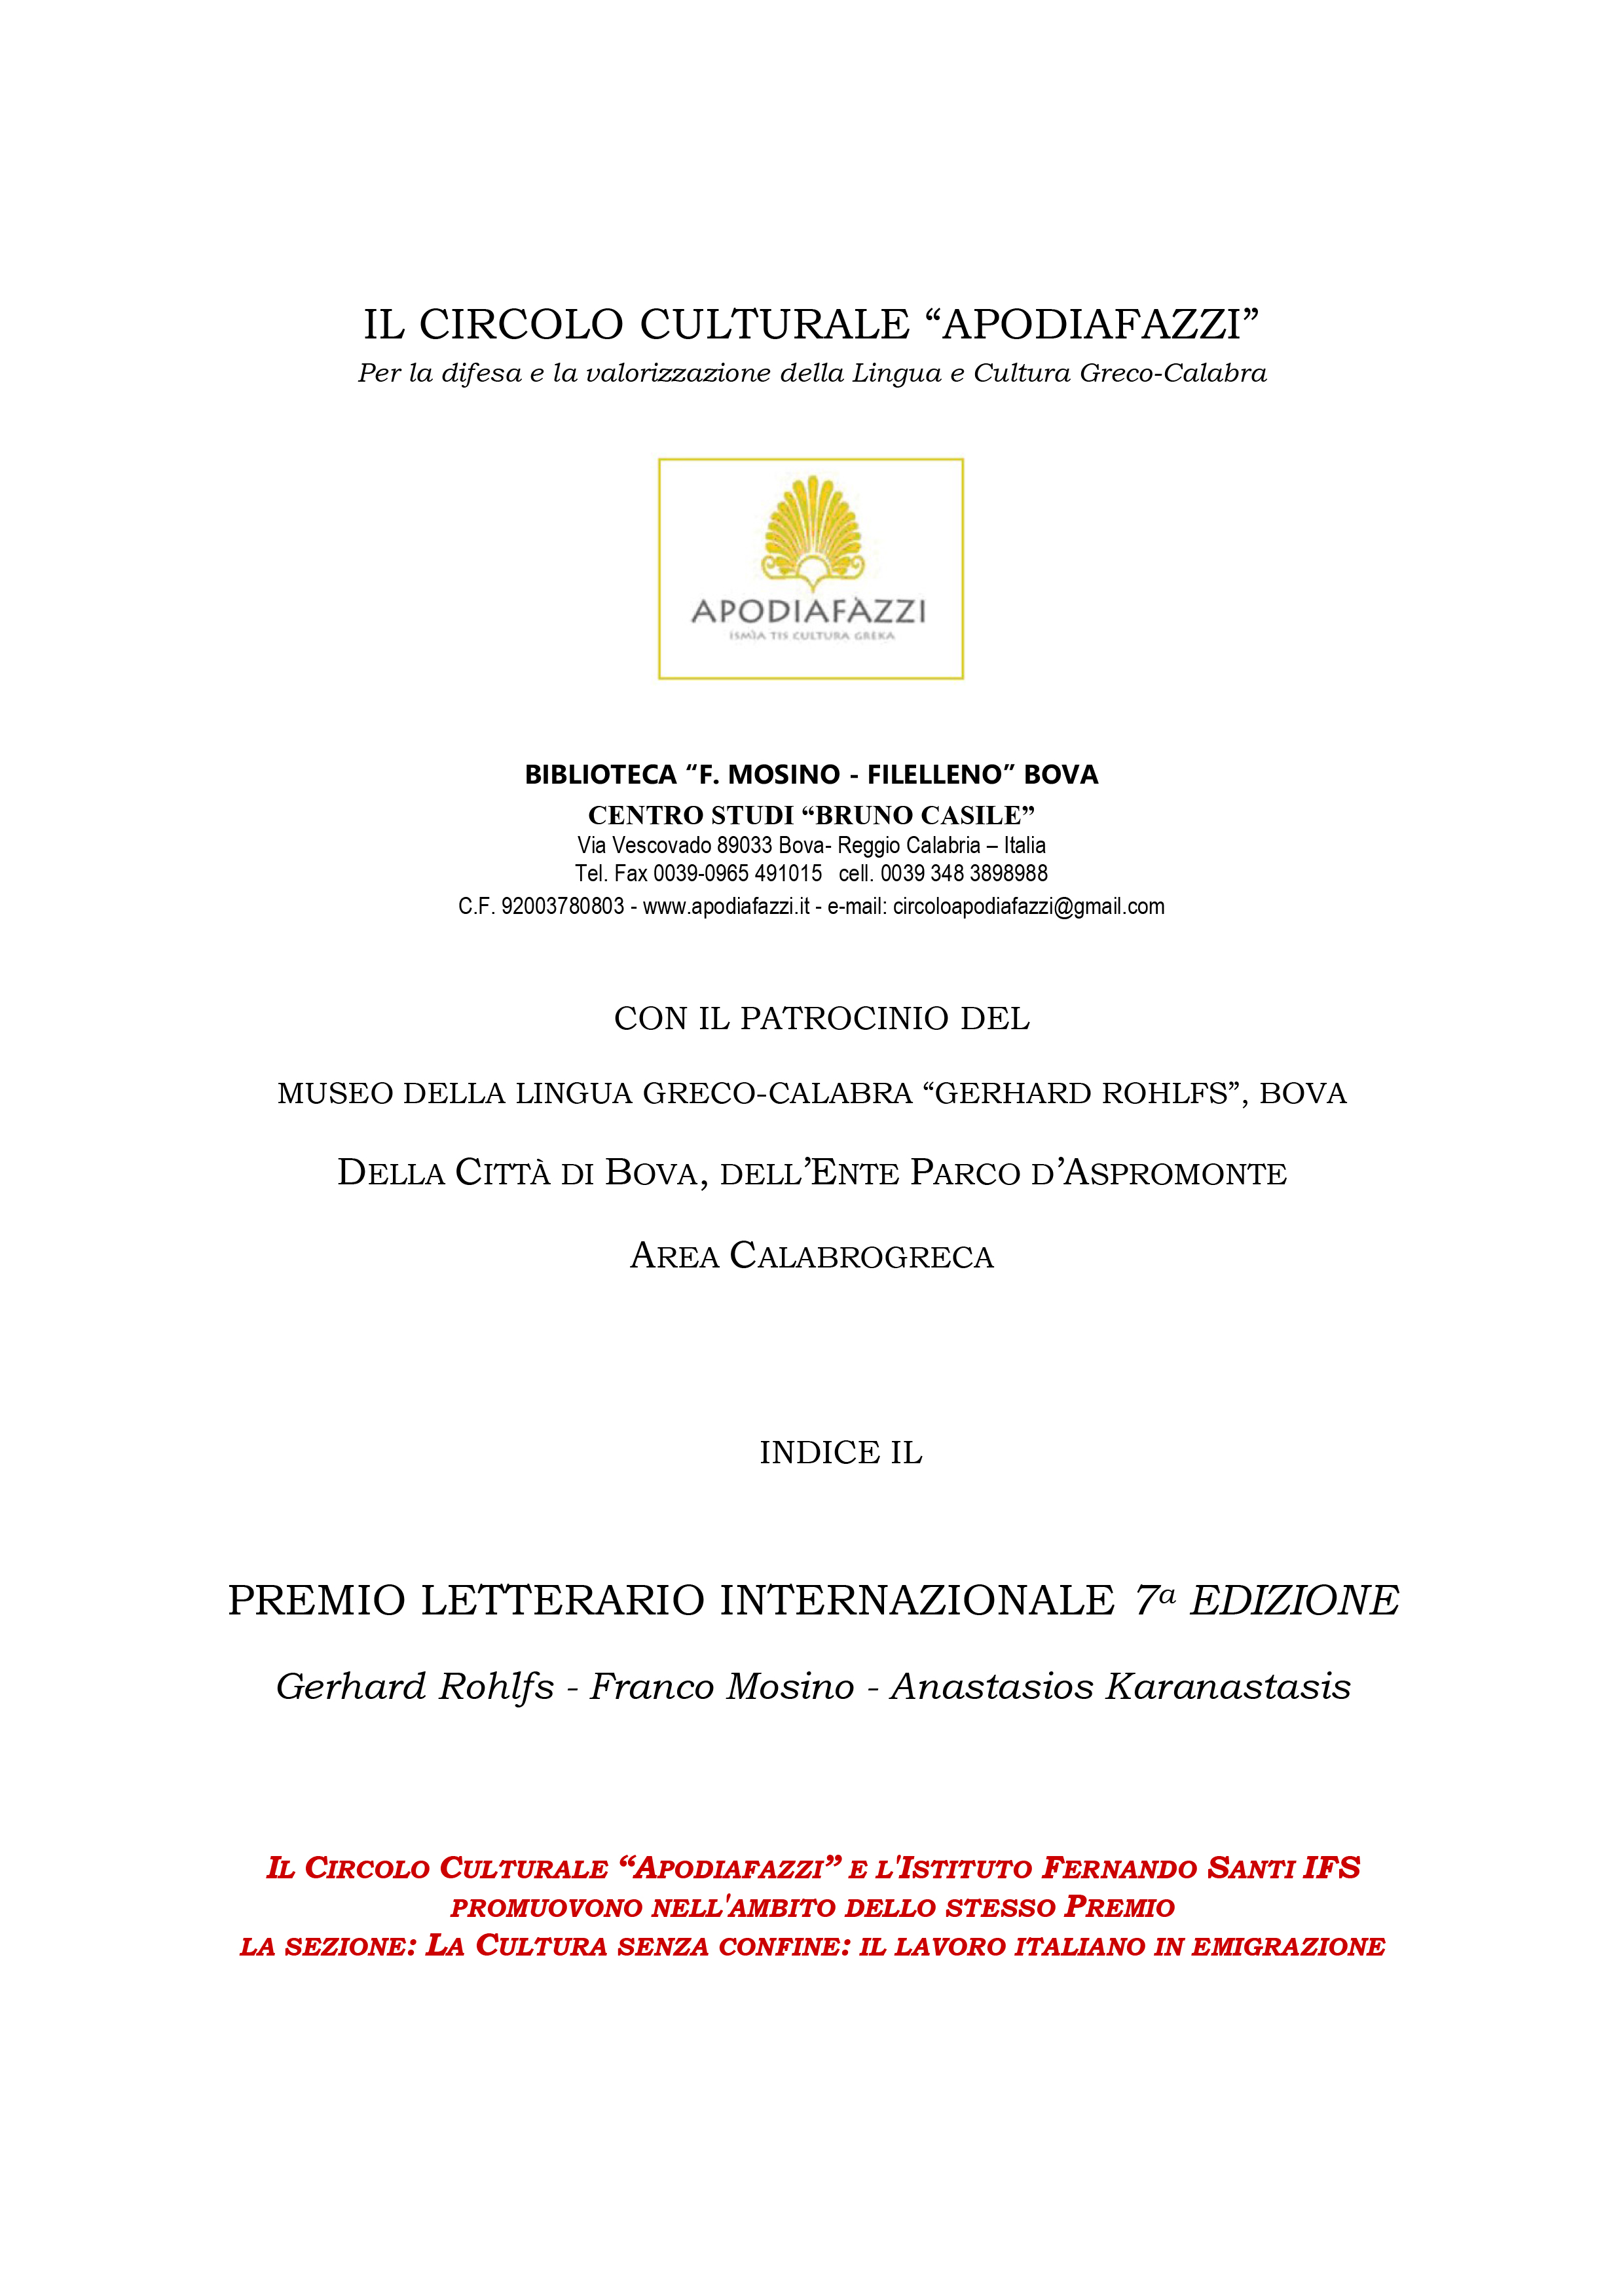 Settima edizione del Premio Letterario Internazionale Gerhard Rohlfs Franco Mosino Anastasios Karanastasis indetto dal Circolo Apodiafazzi